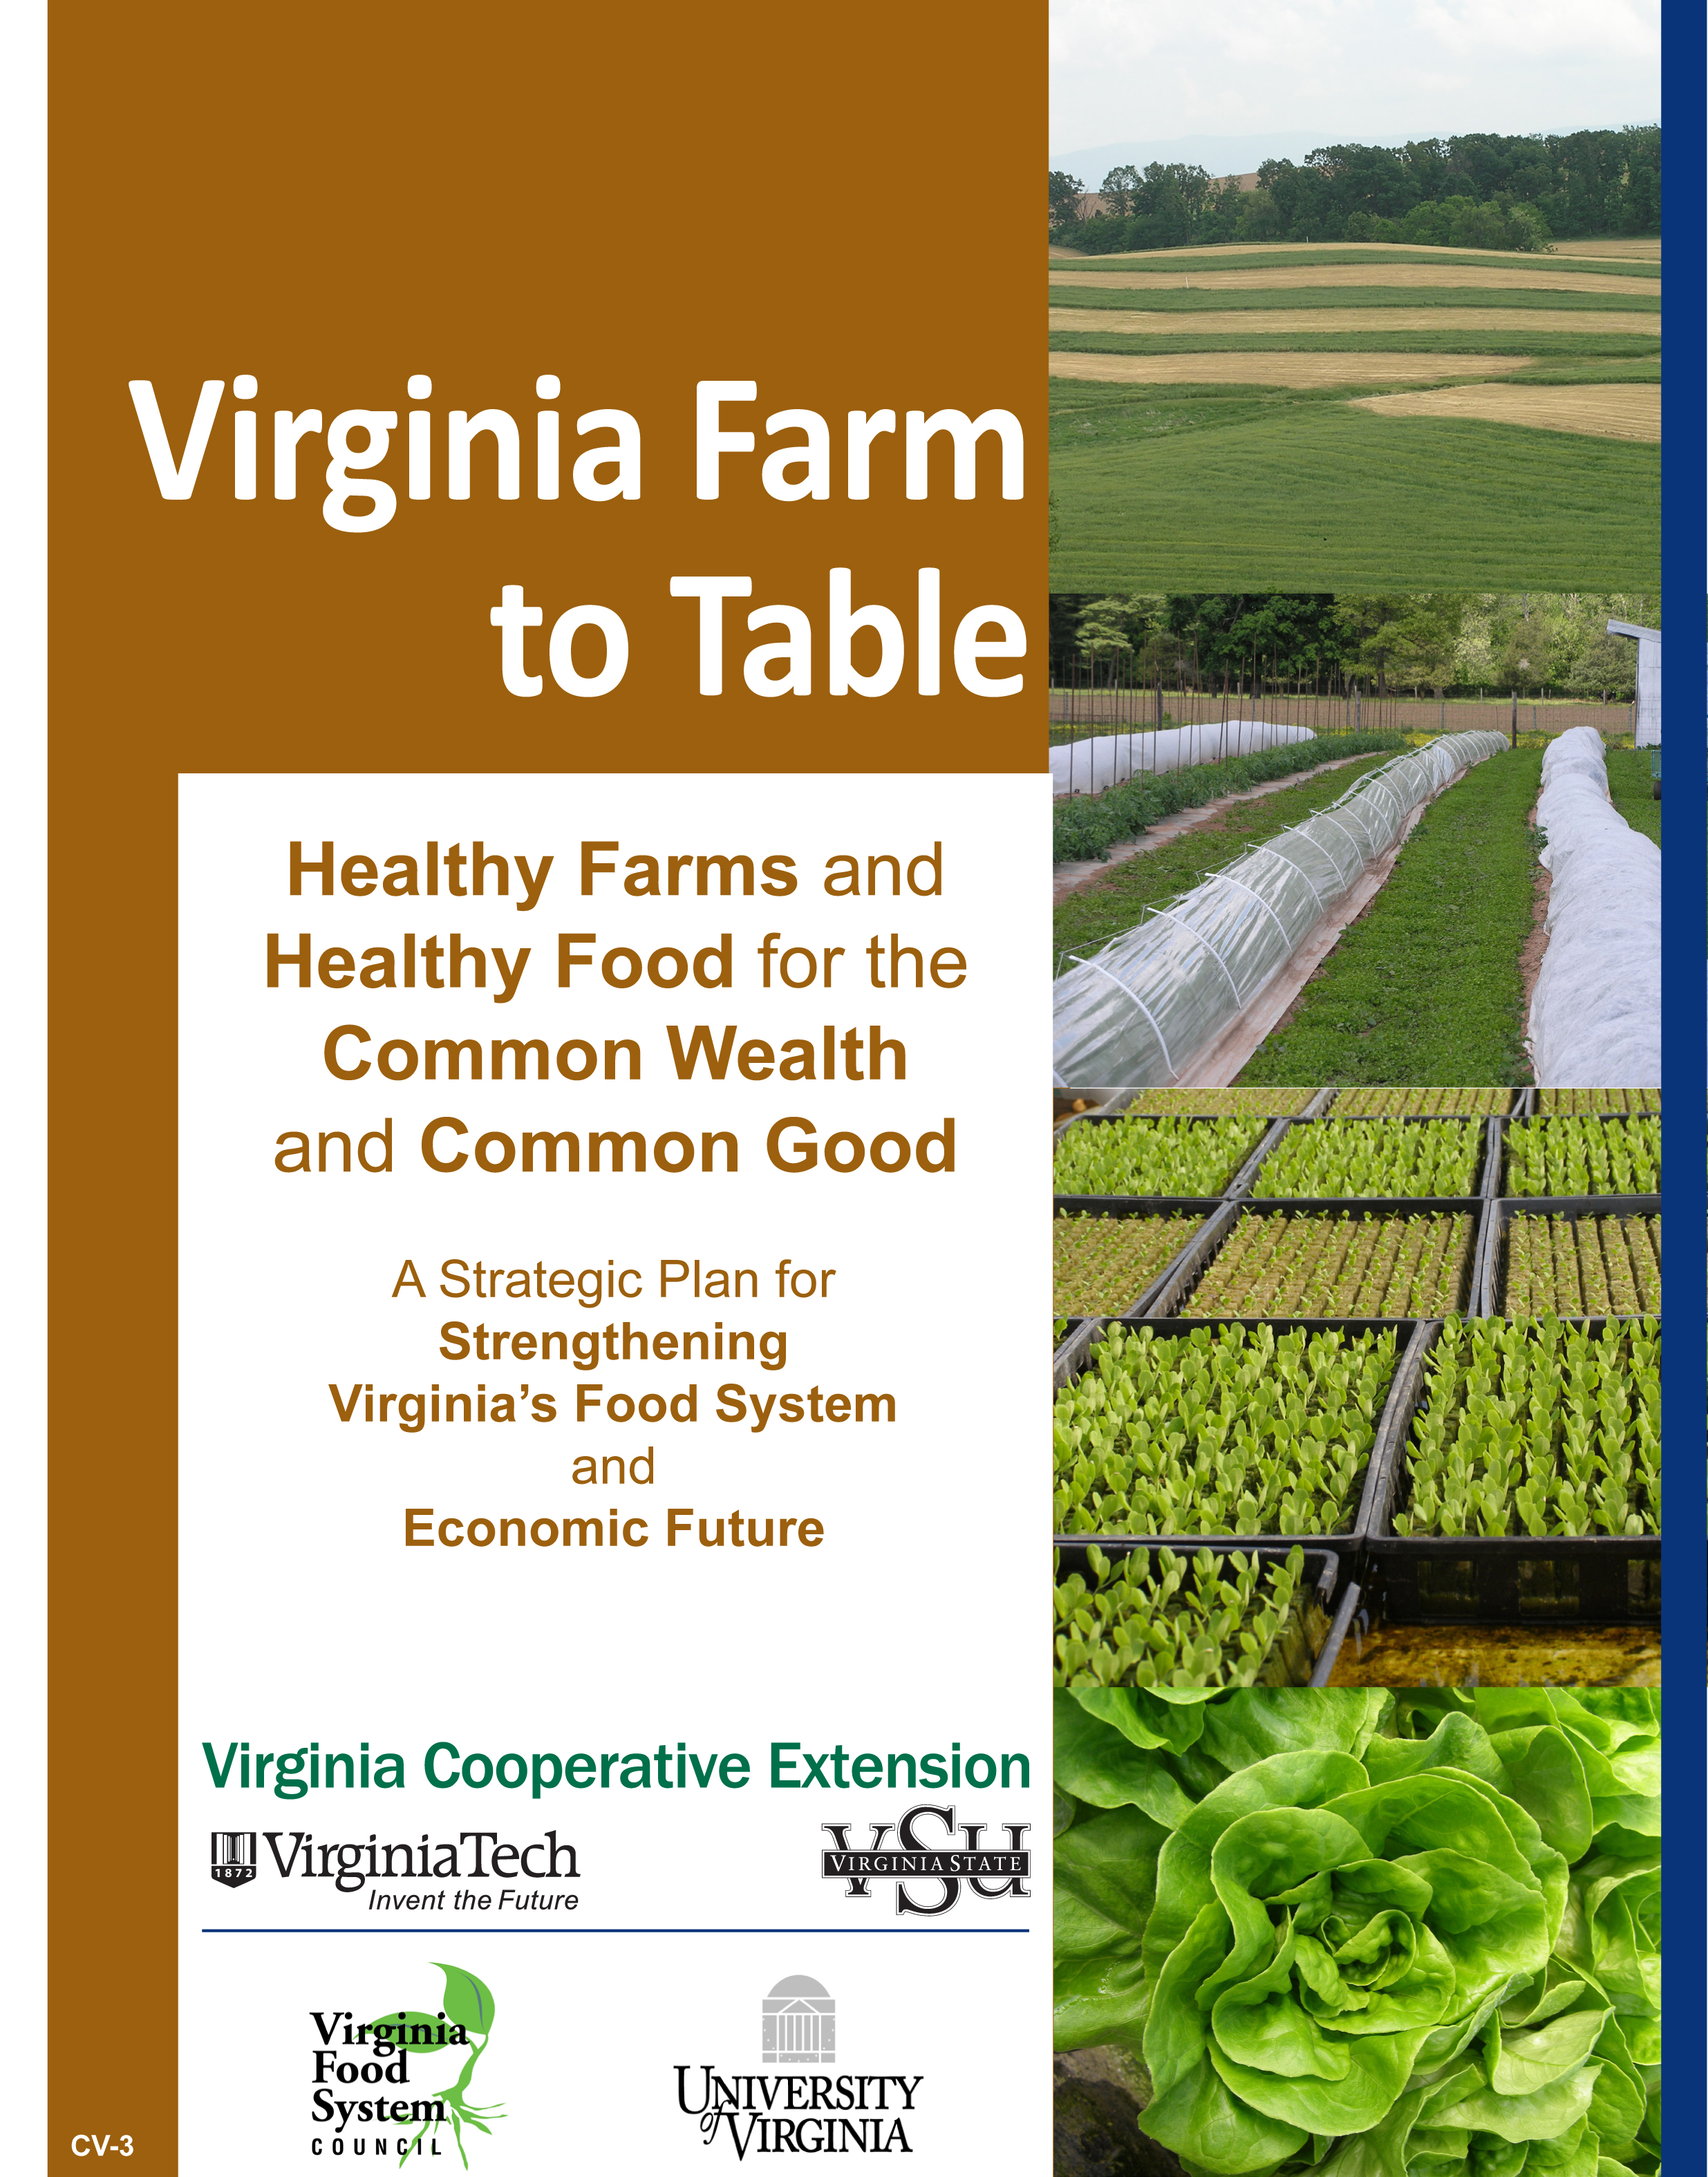 Virginia Farm to Table Plan Cover